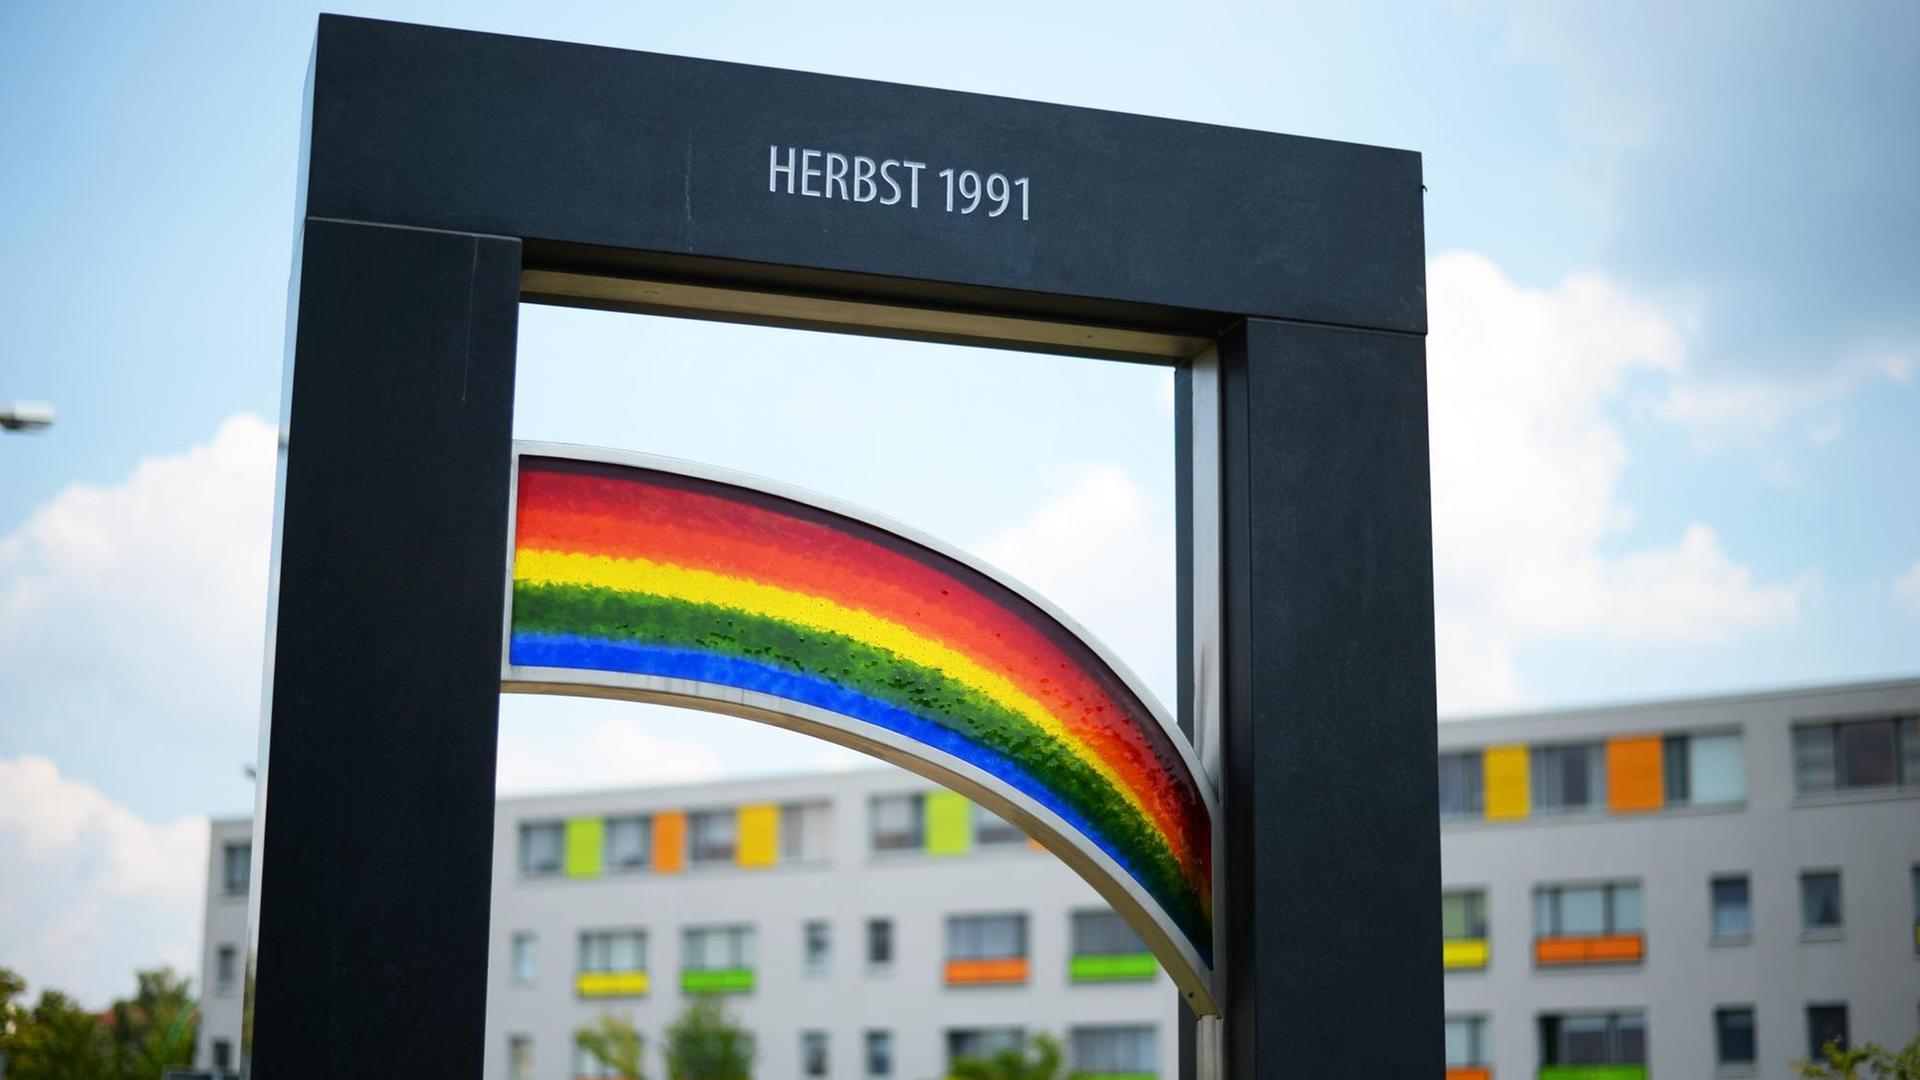 Gedenkstele in Hoyerswerda zeigt einen Regenbogen und die Aufschrift "Herbst 1991"